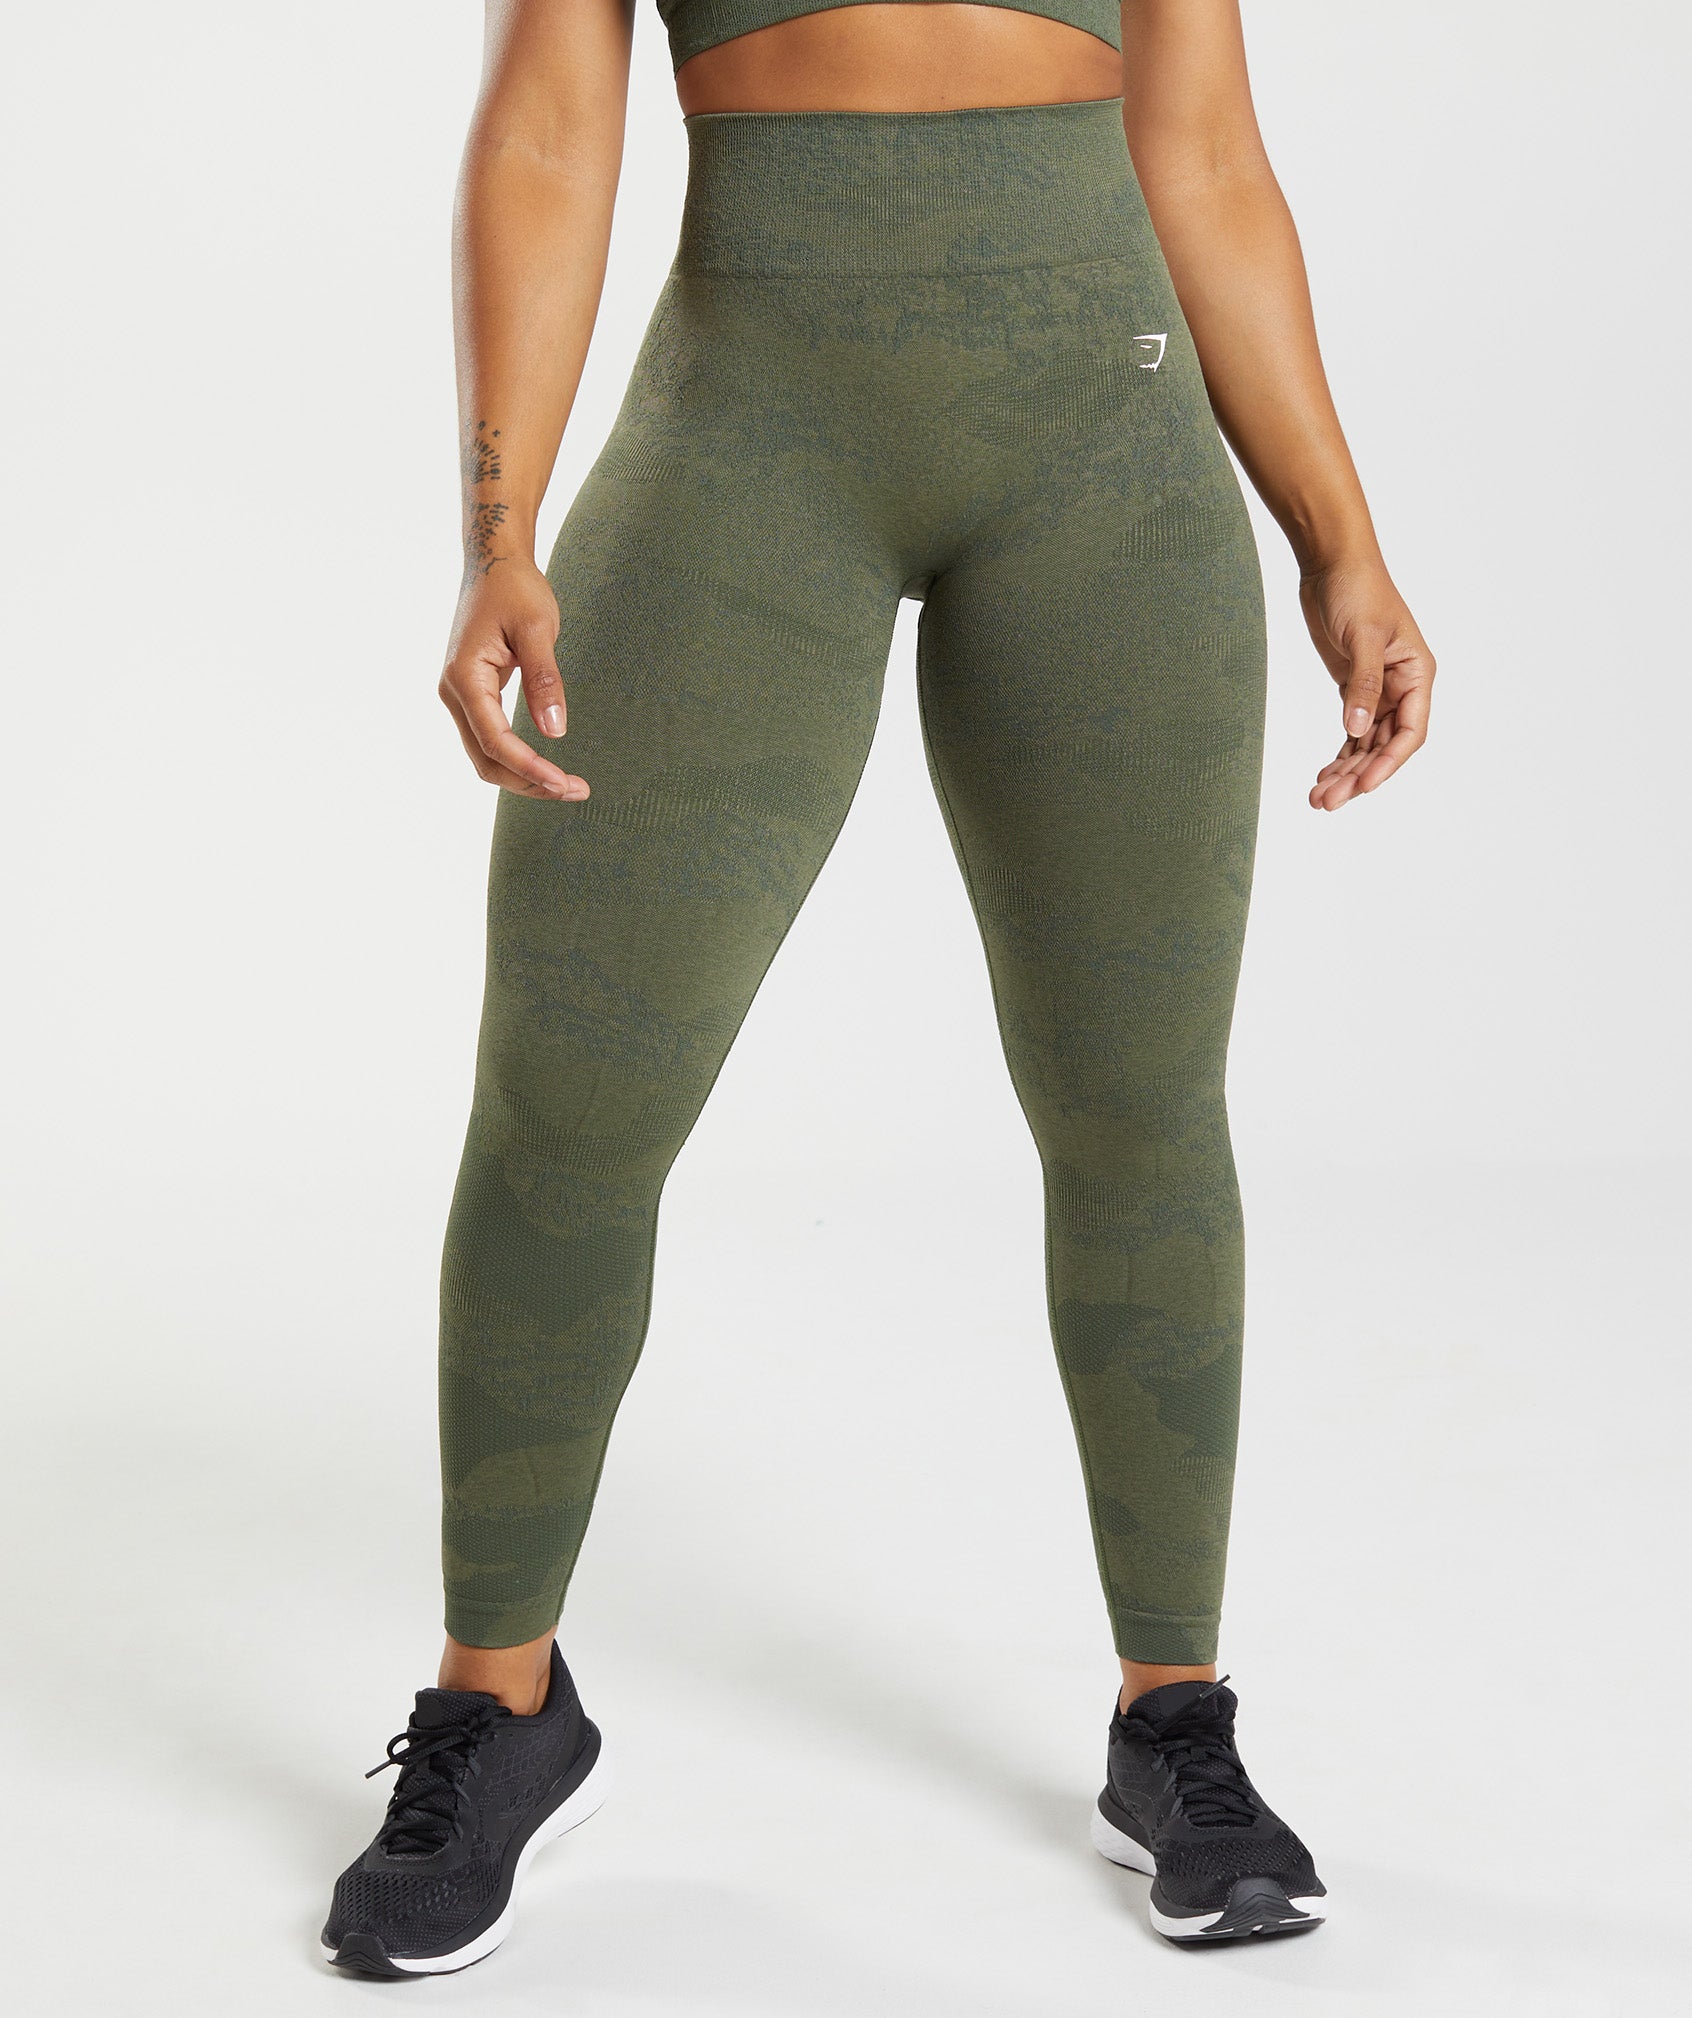 Alosoft Leggingswomen's Seamless Spandex Yoga Pants - Gymshark-inspired  Fitness Leggings